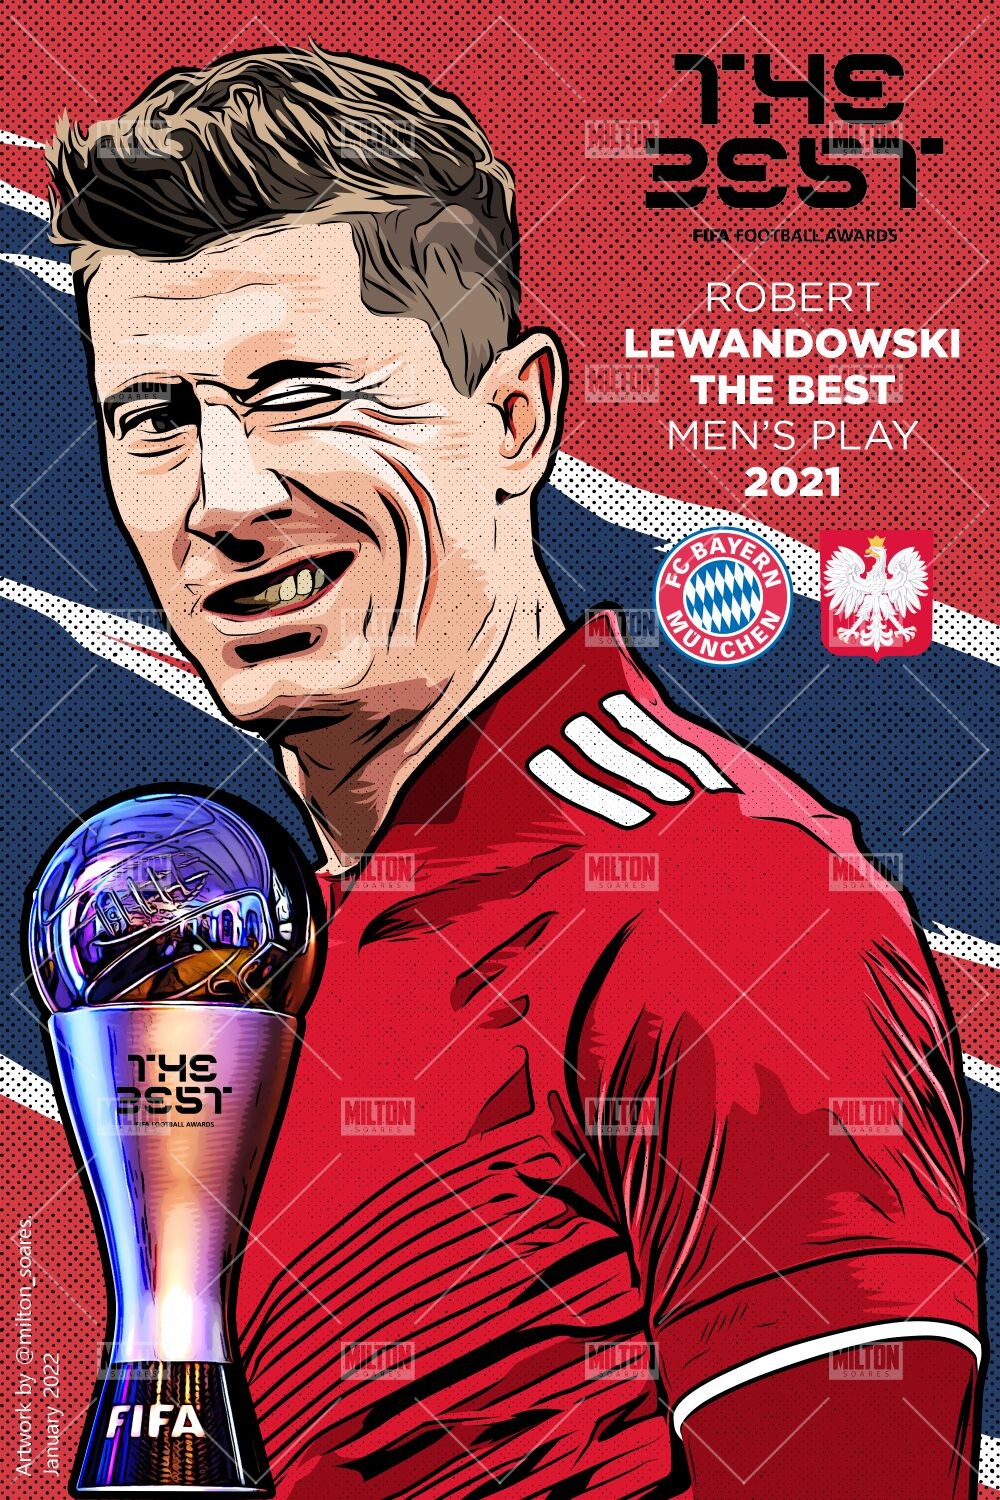 Lewandowski é eleito o melhor jogador de futebol do mundo pela FIFA